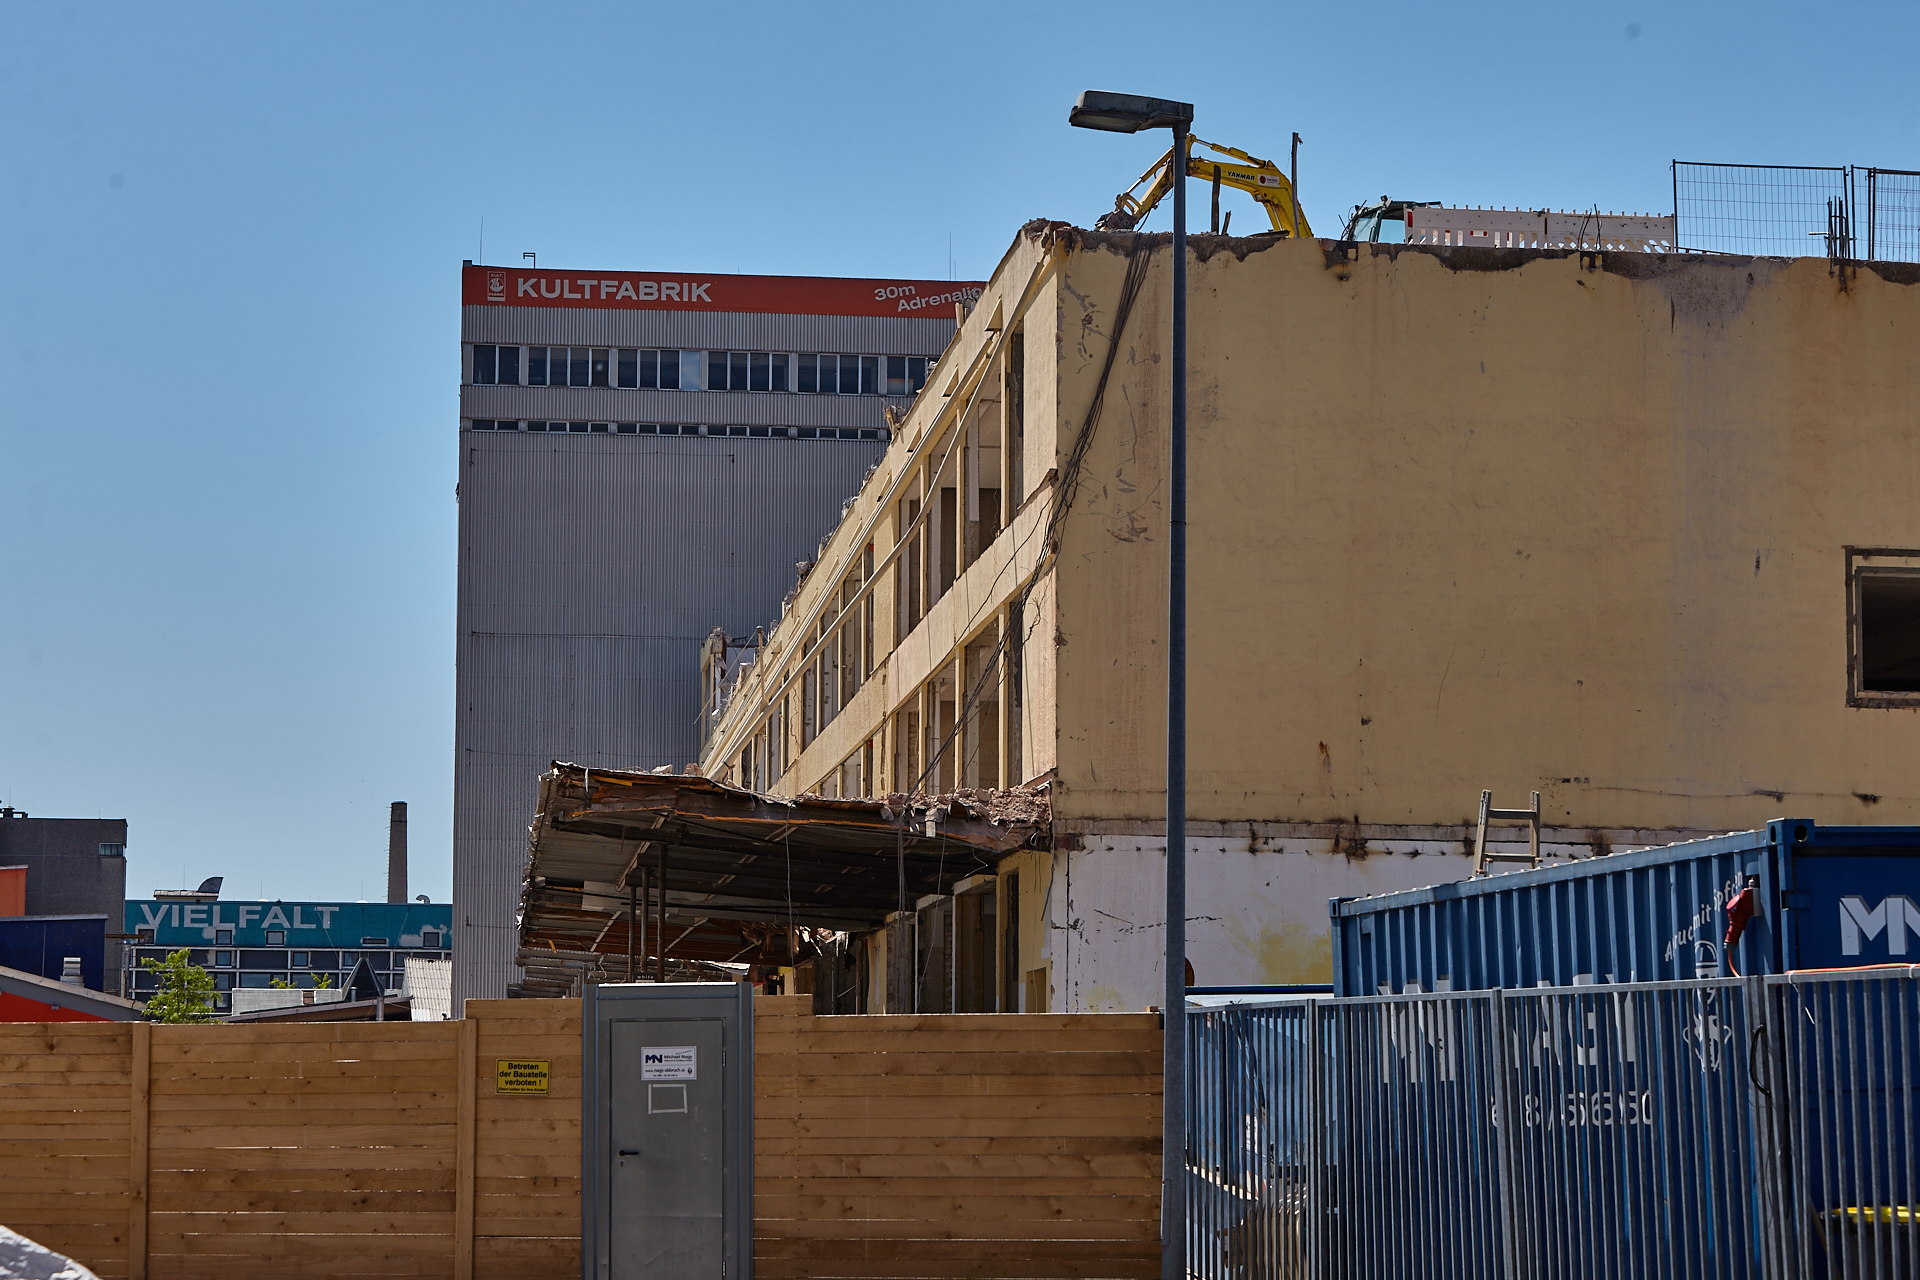 04.06.2014 - Die KULTFABRIK wird abgerissen